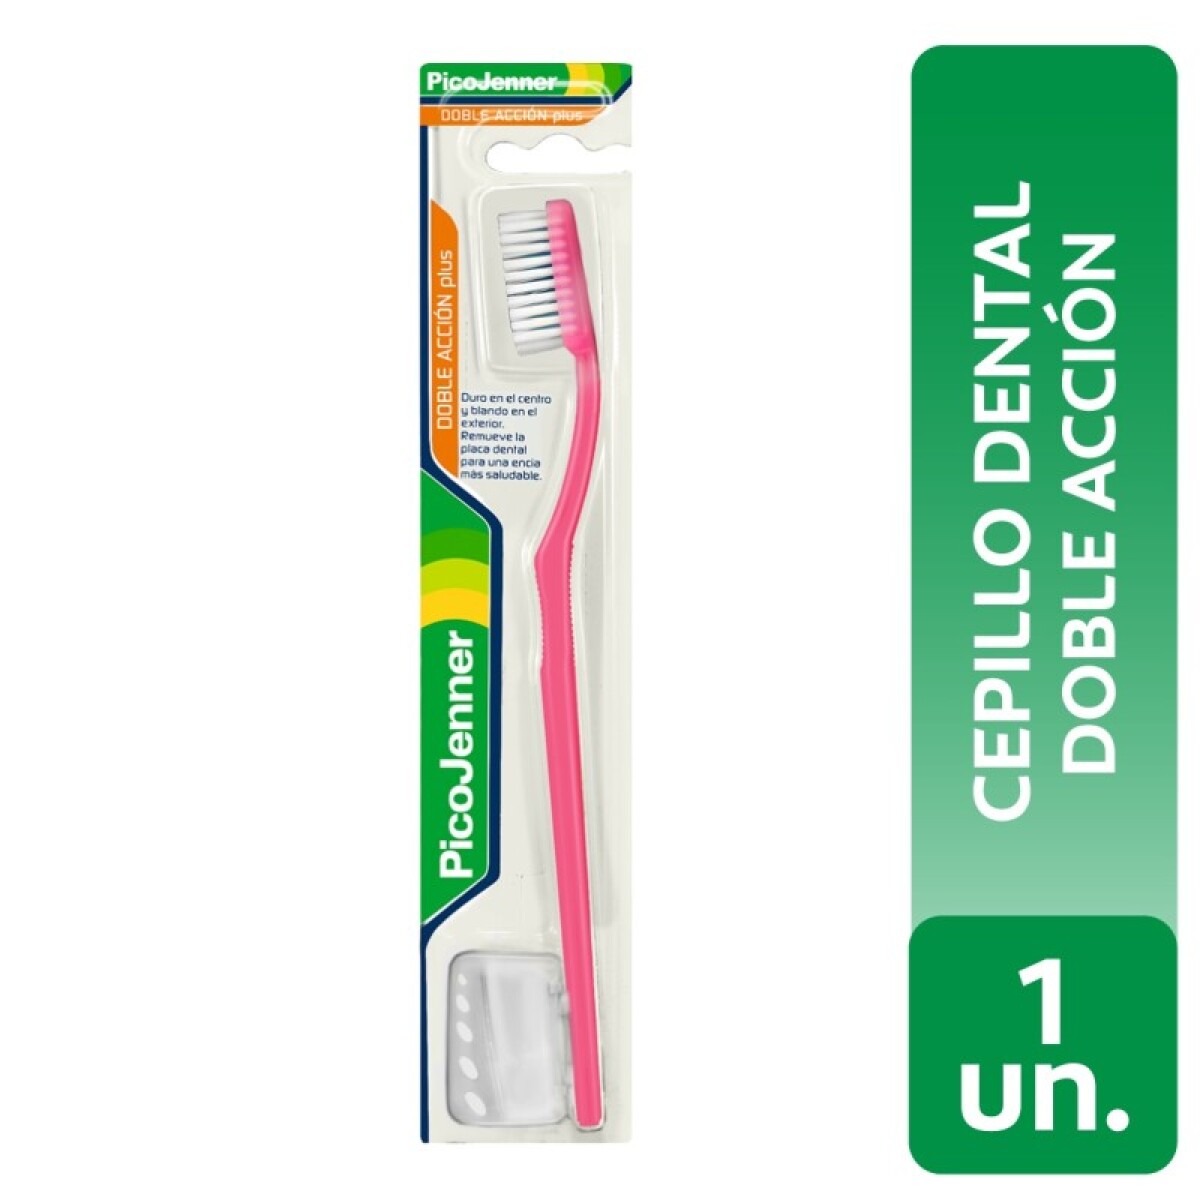 Cepillo Dental Pico Jenner Doble Acción Plus 1 Unidad con protector. 